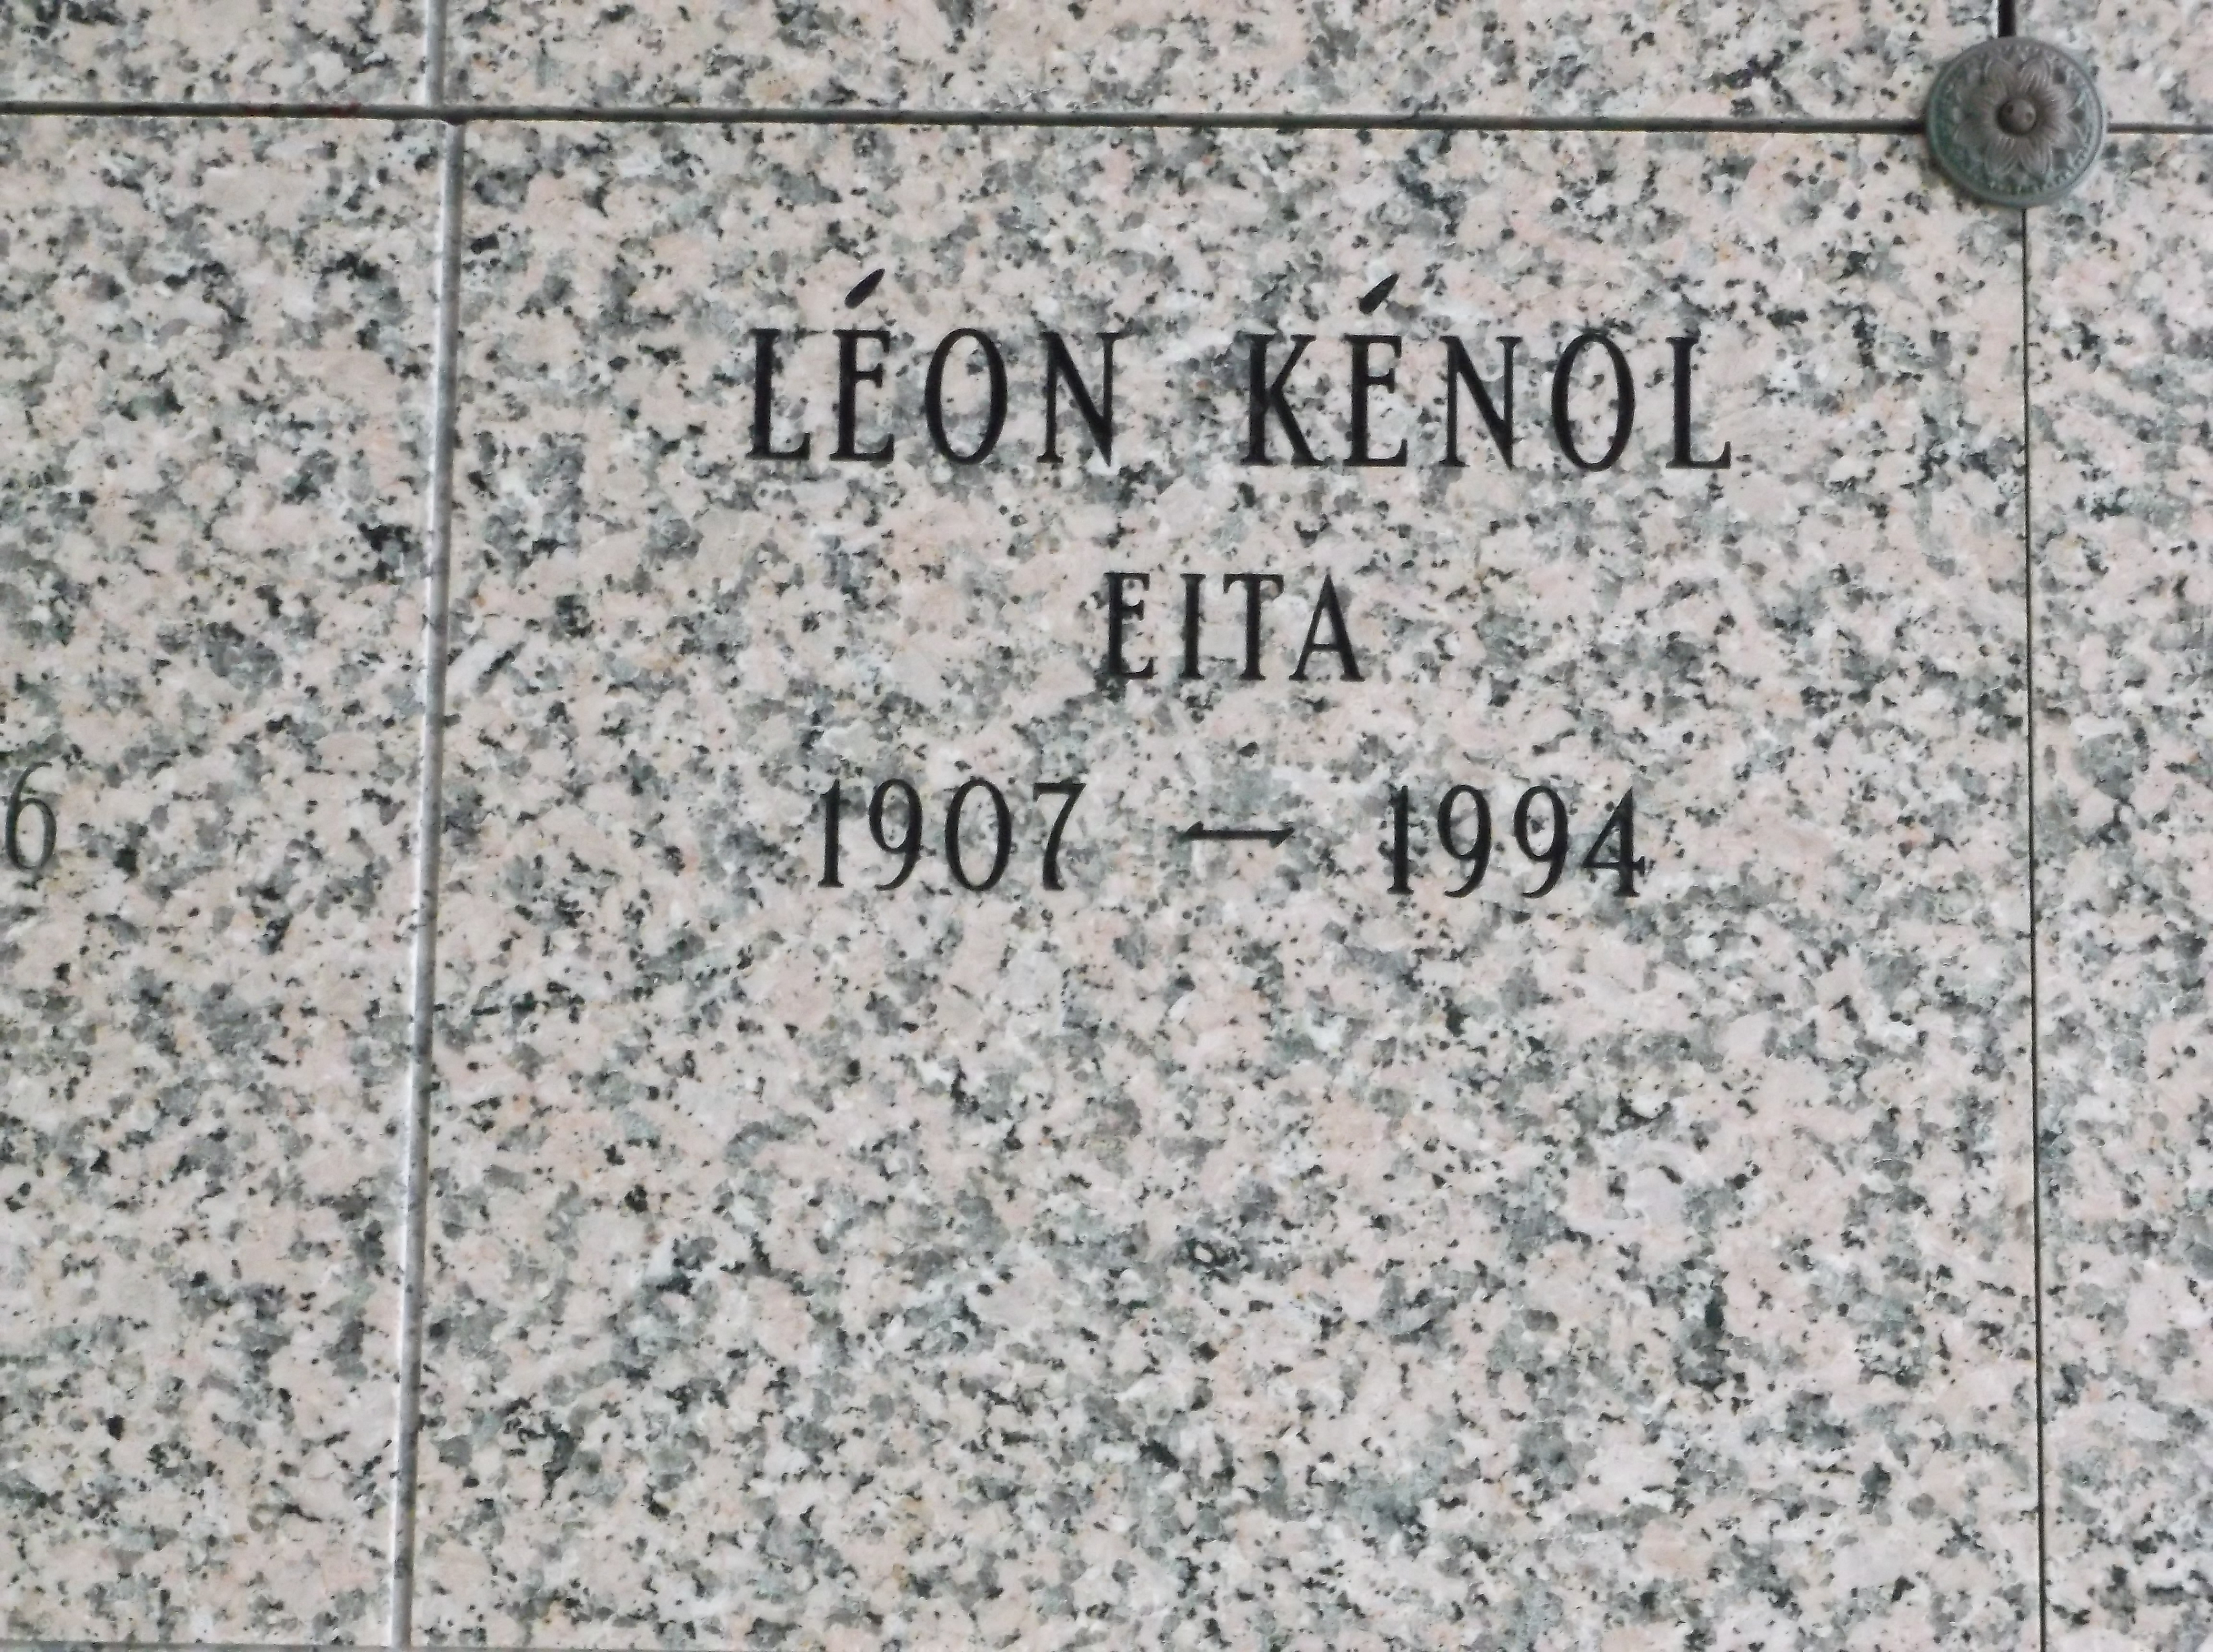 Eita Léon Kénol